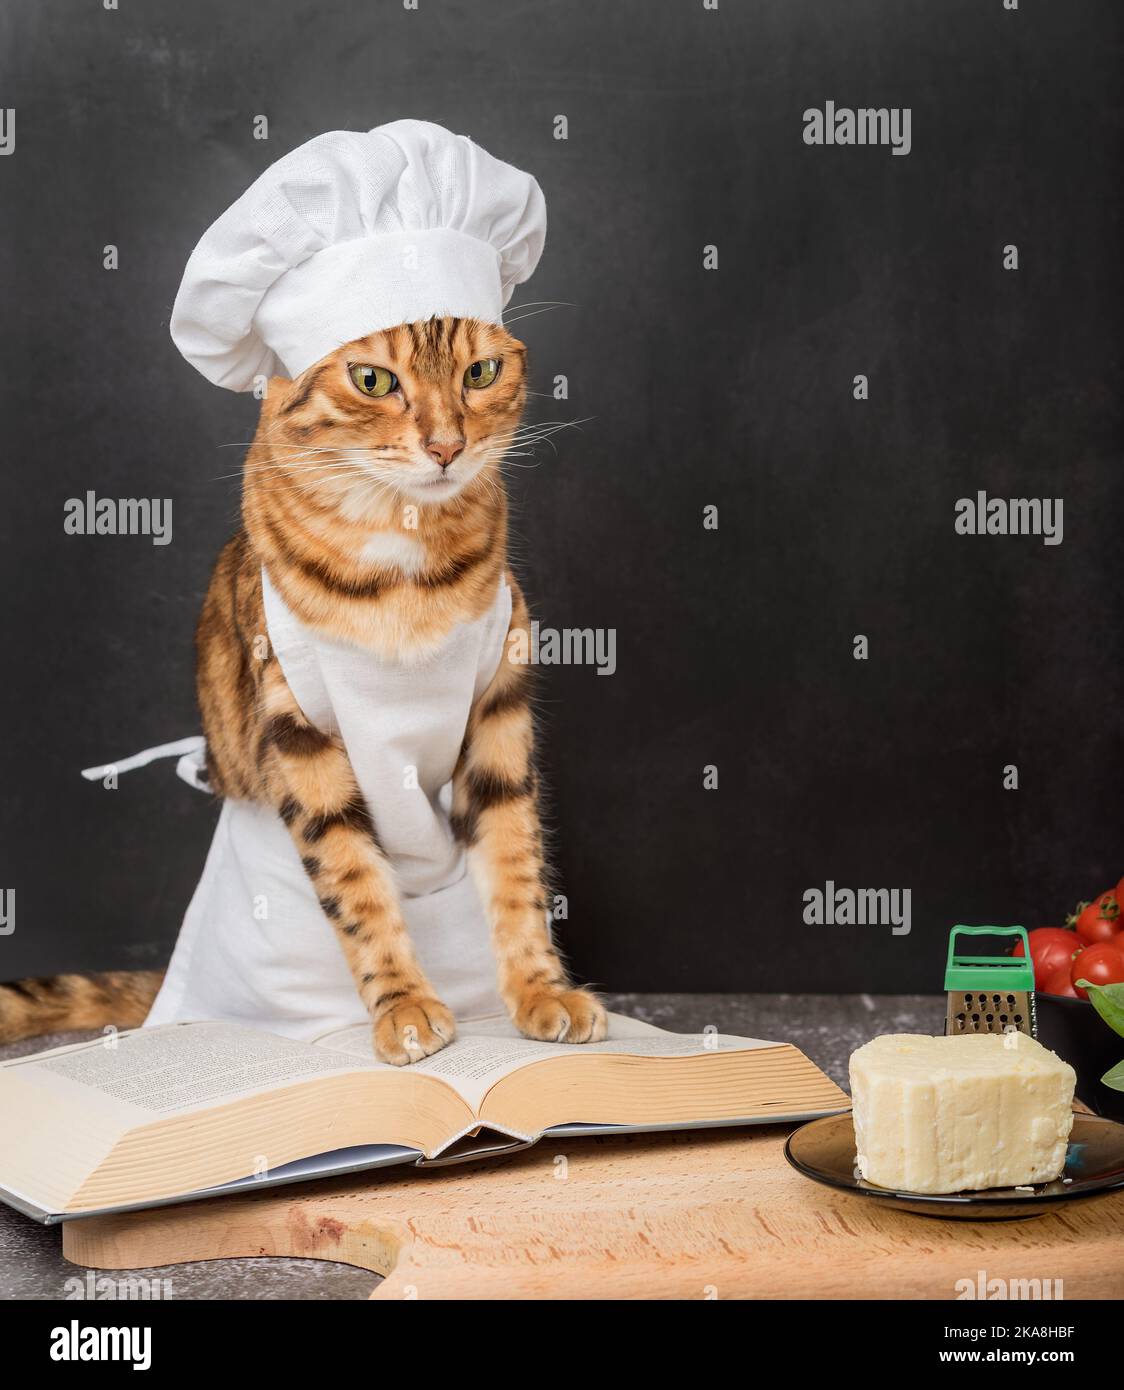 Un jeune chat domestique dans un tablier lit un livre de recettes sur un fond sombre. Banque D'Images